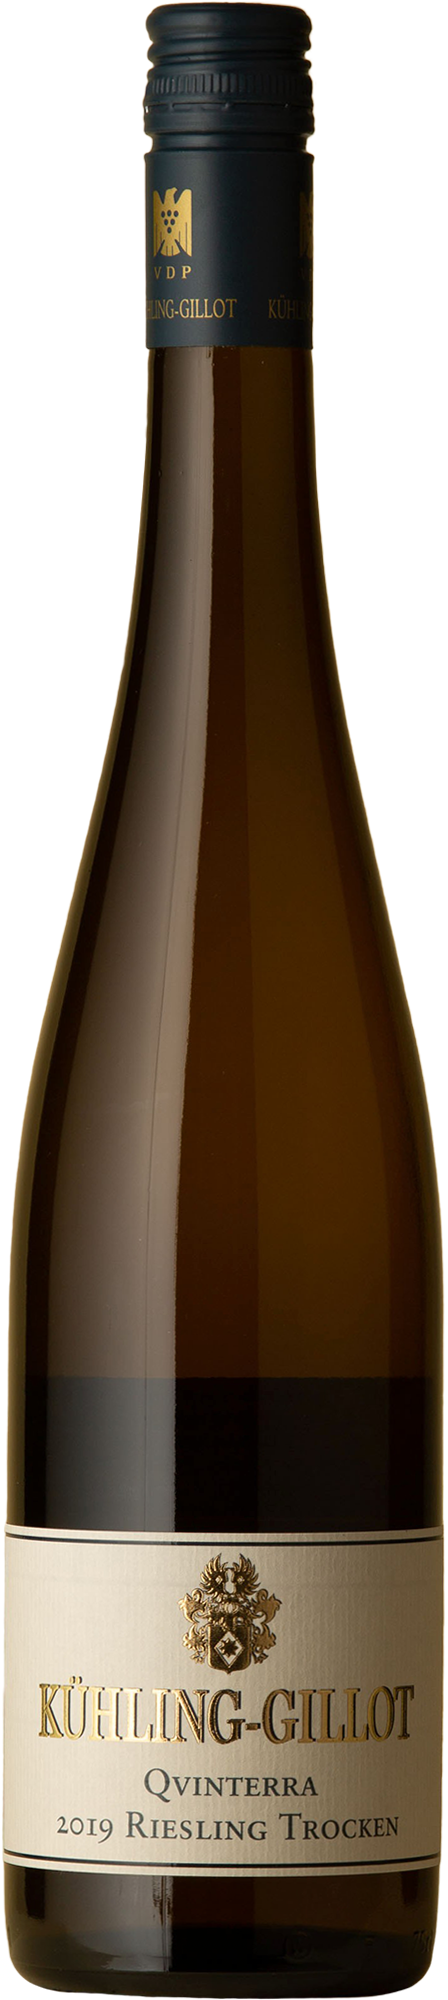 Kuhling-Gillot - Qvinterra Riesling 2019 White Wine